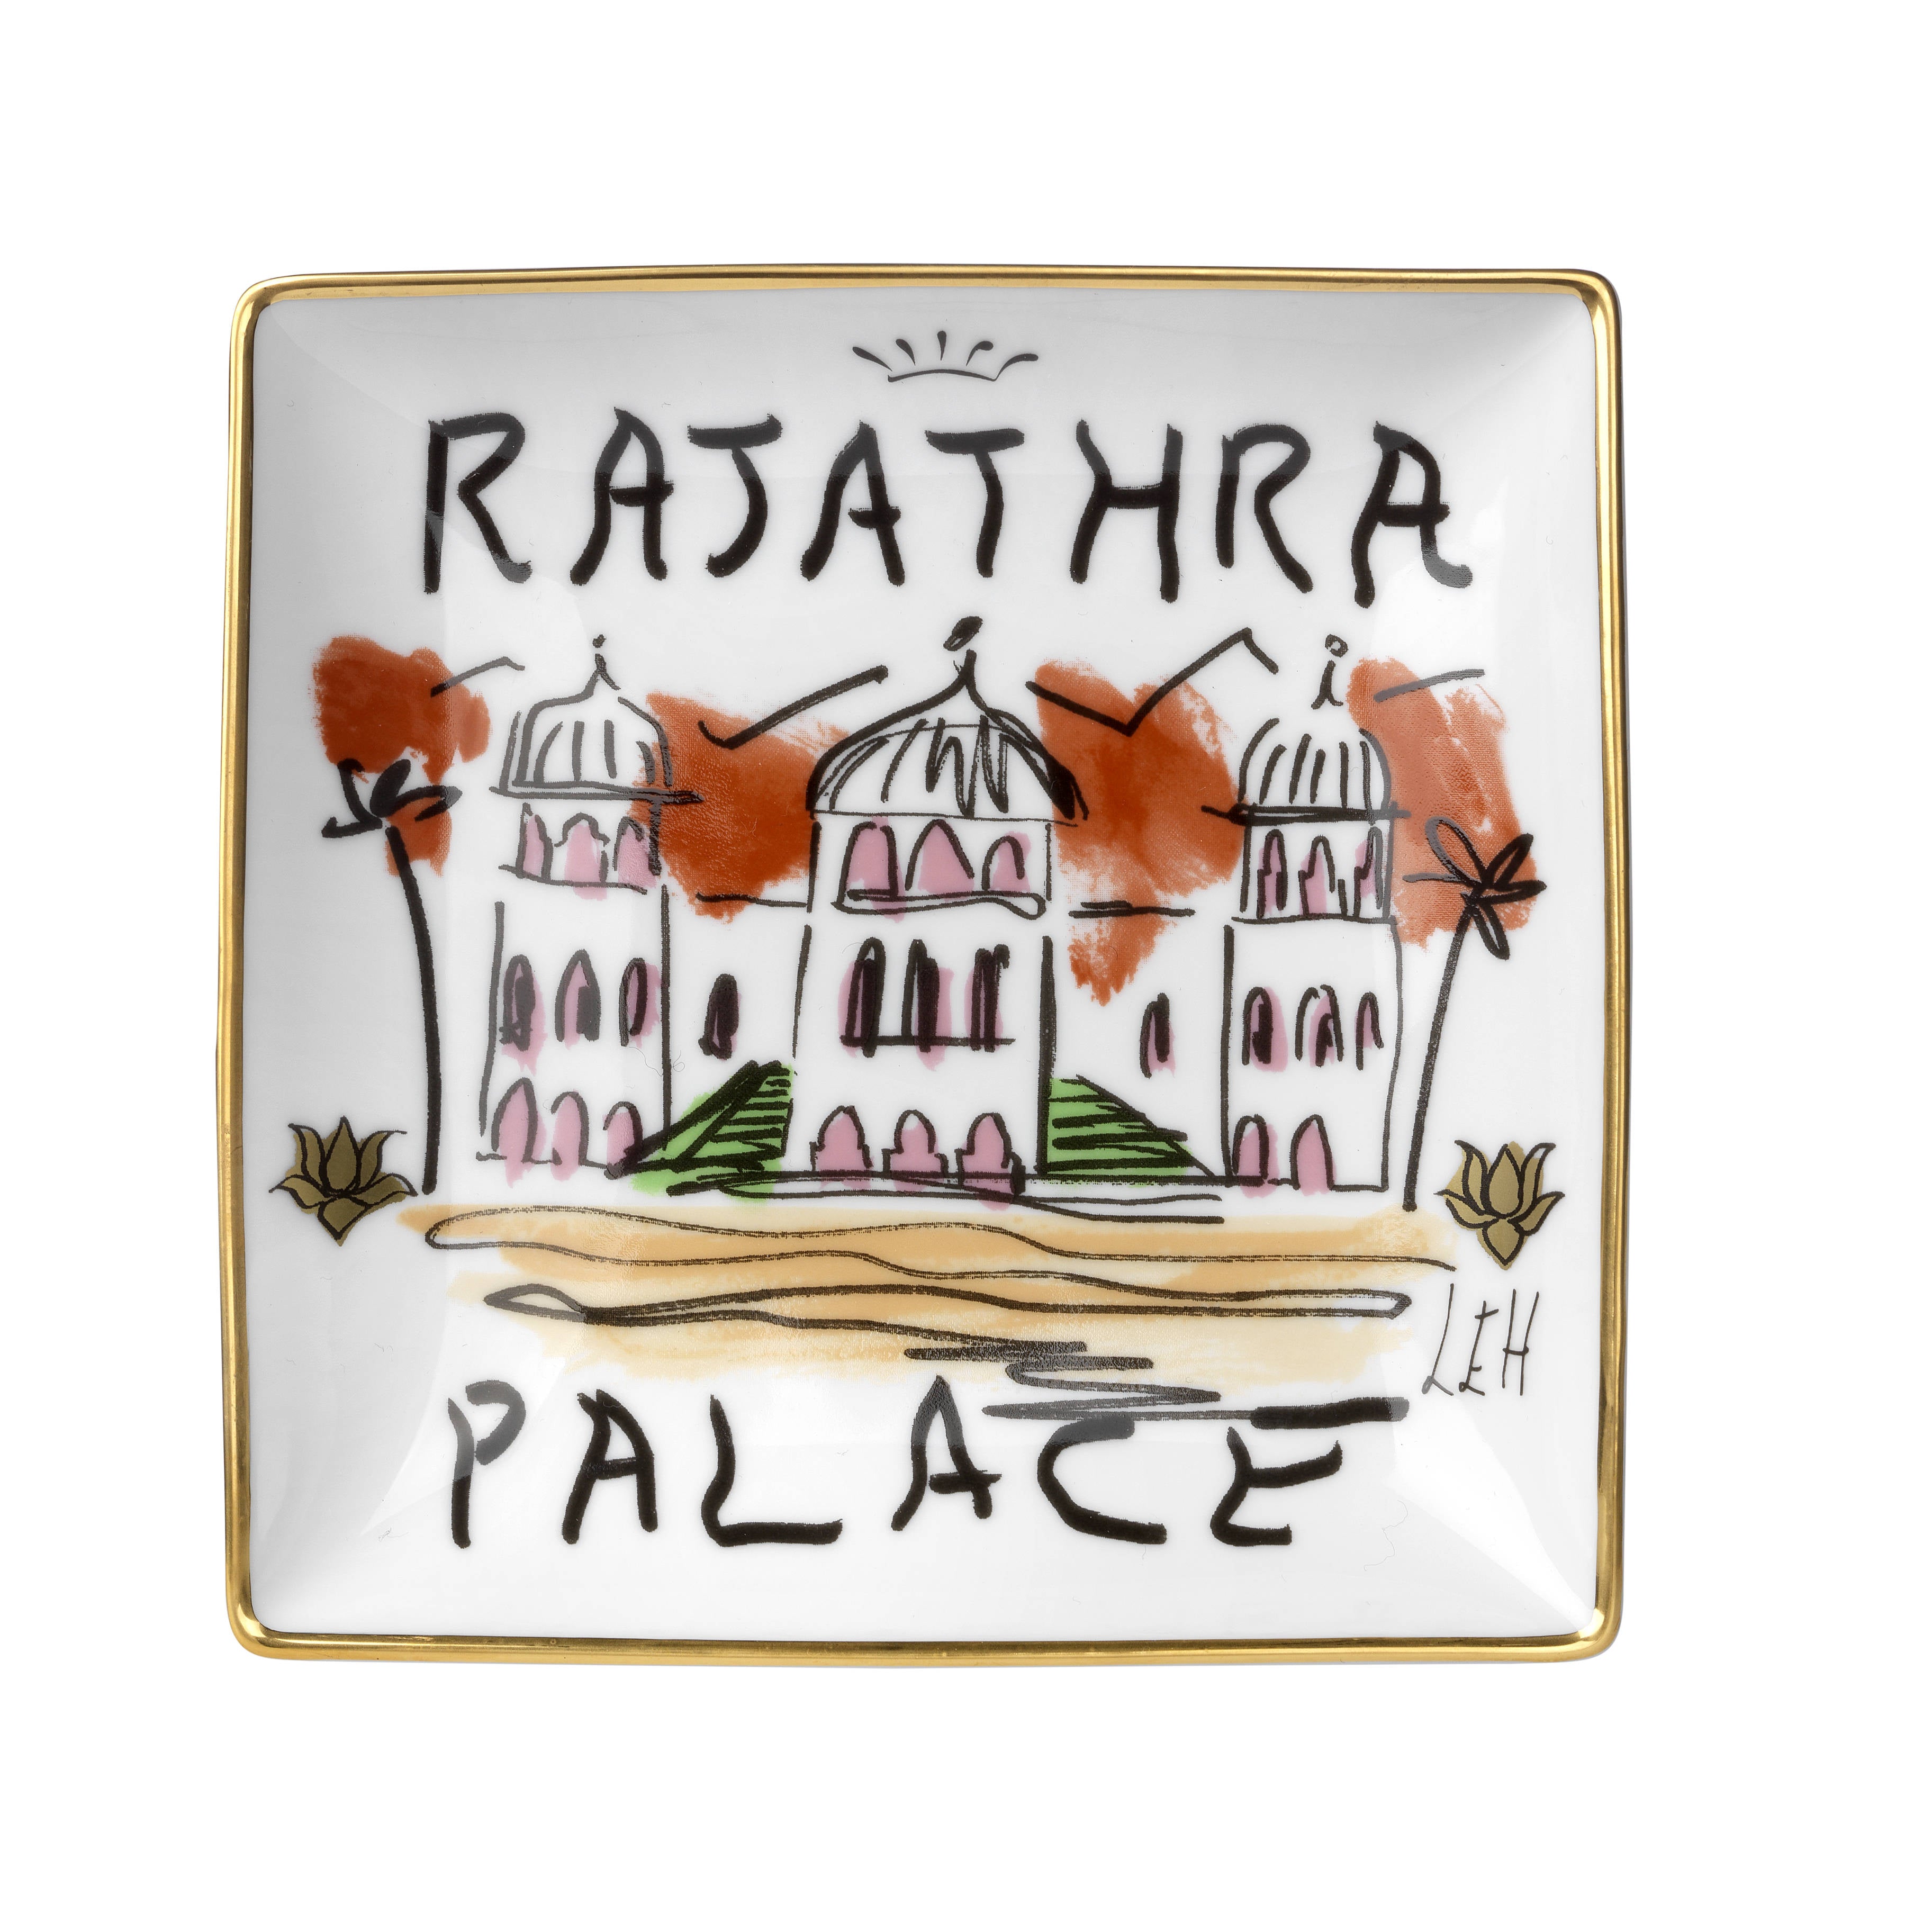 Profumi Luchino Rajathra Palace Vide Poche